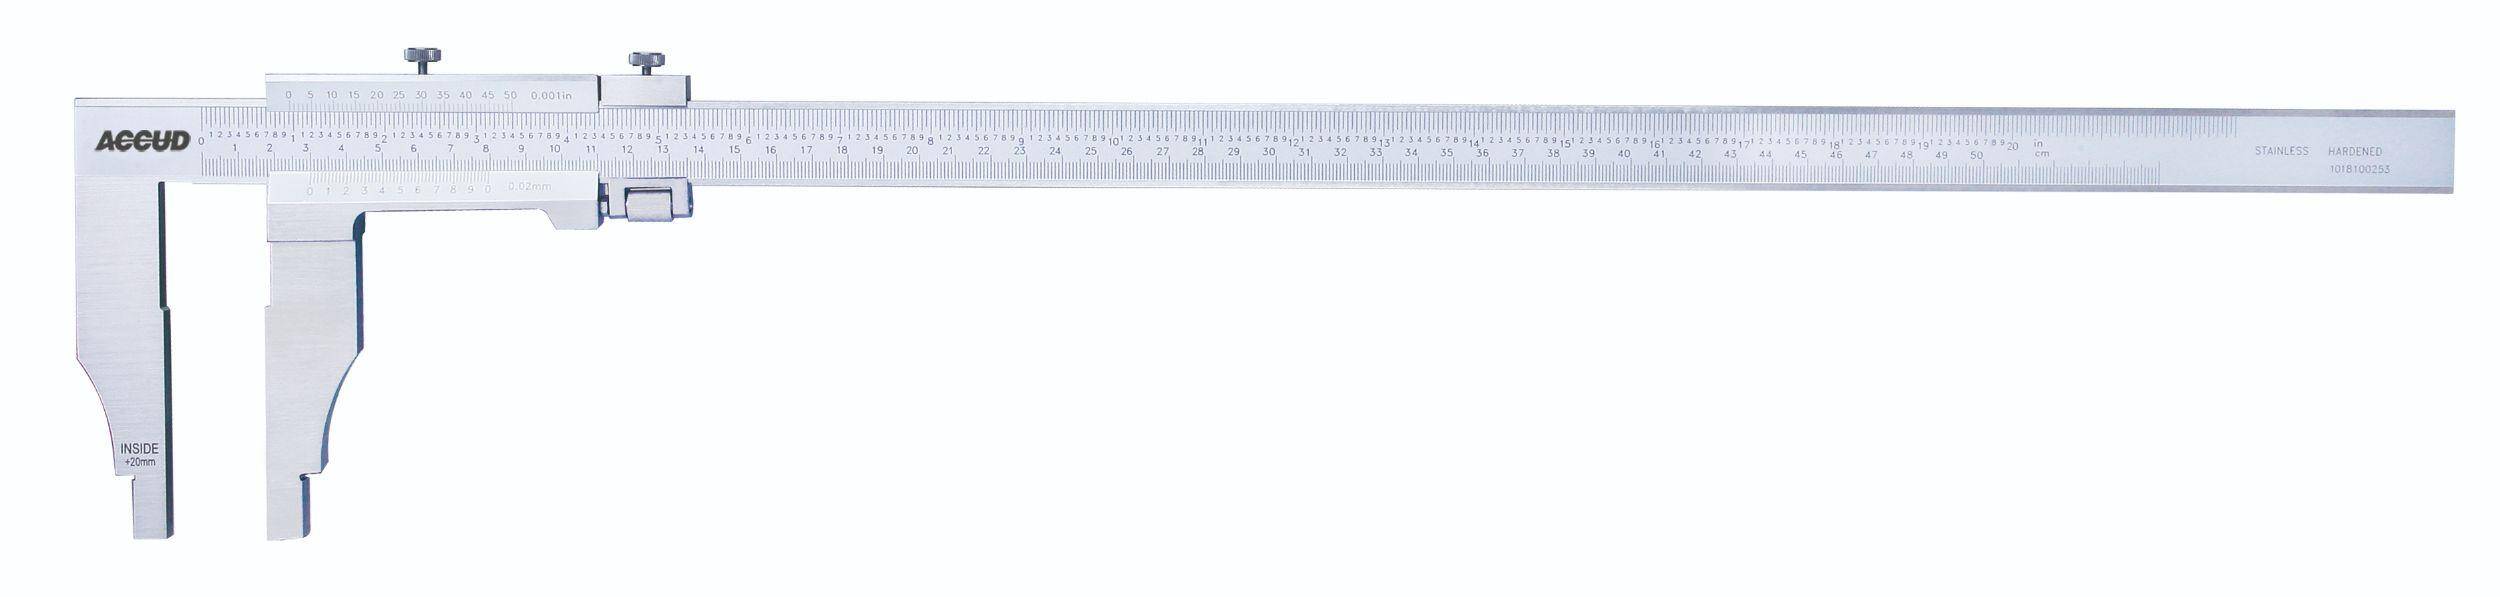 ACCUD suwmiarka analogowa 1000/0.05 mm jednostronna długość szczęk 150 mm 128-040-51